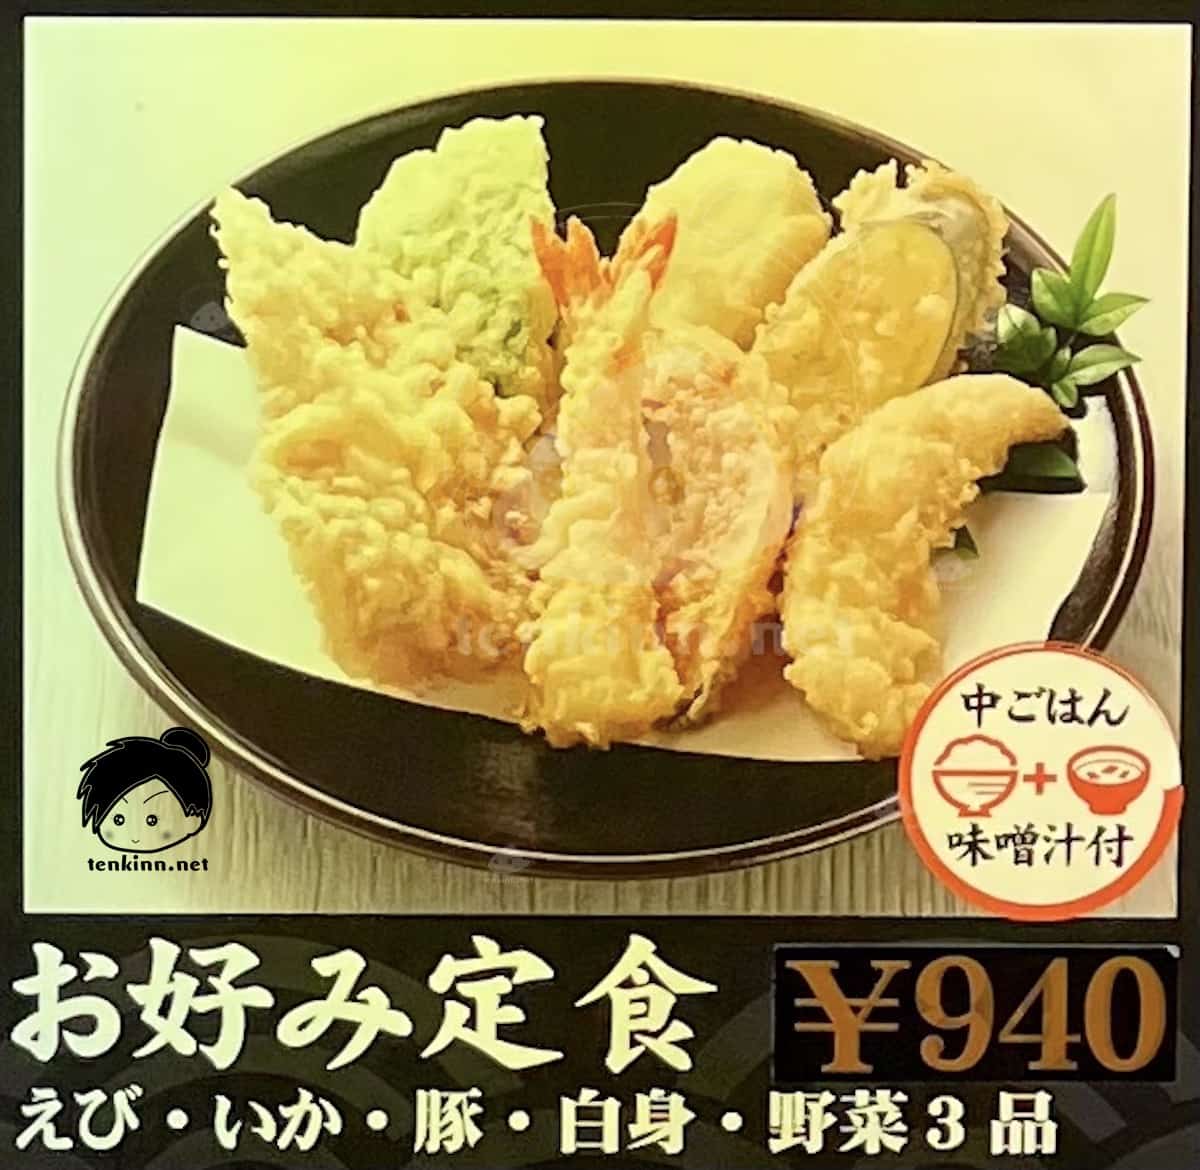 福岡の天ぷら「ひらお」人気のおすすめメニューランキング、お好み定食